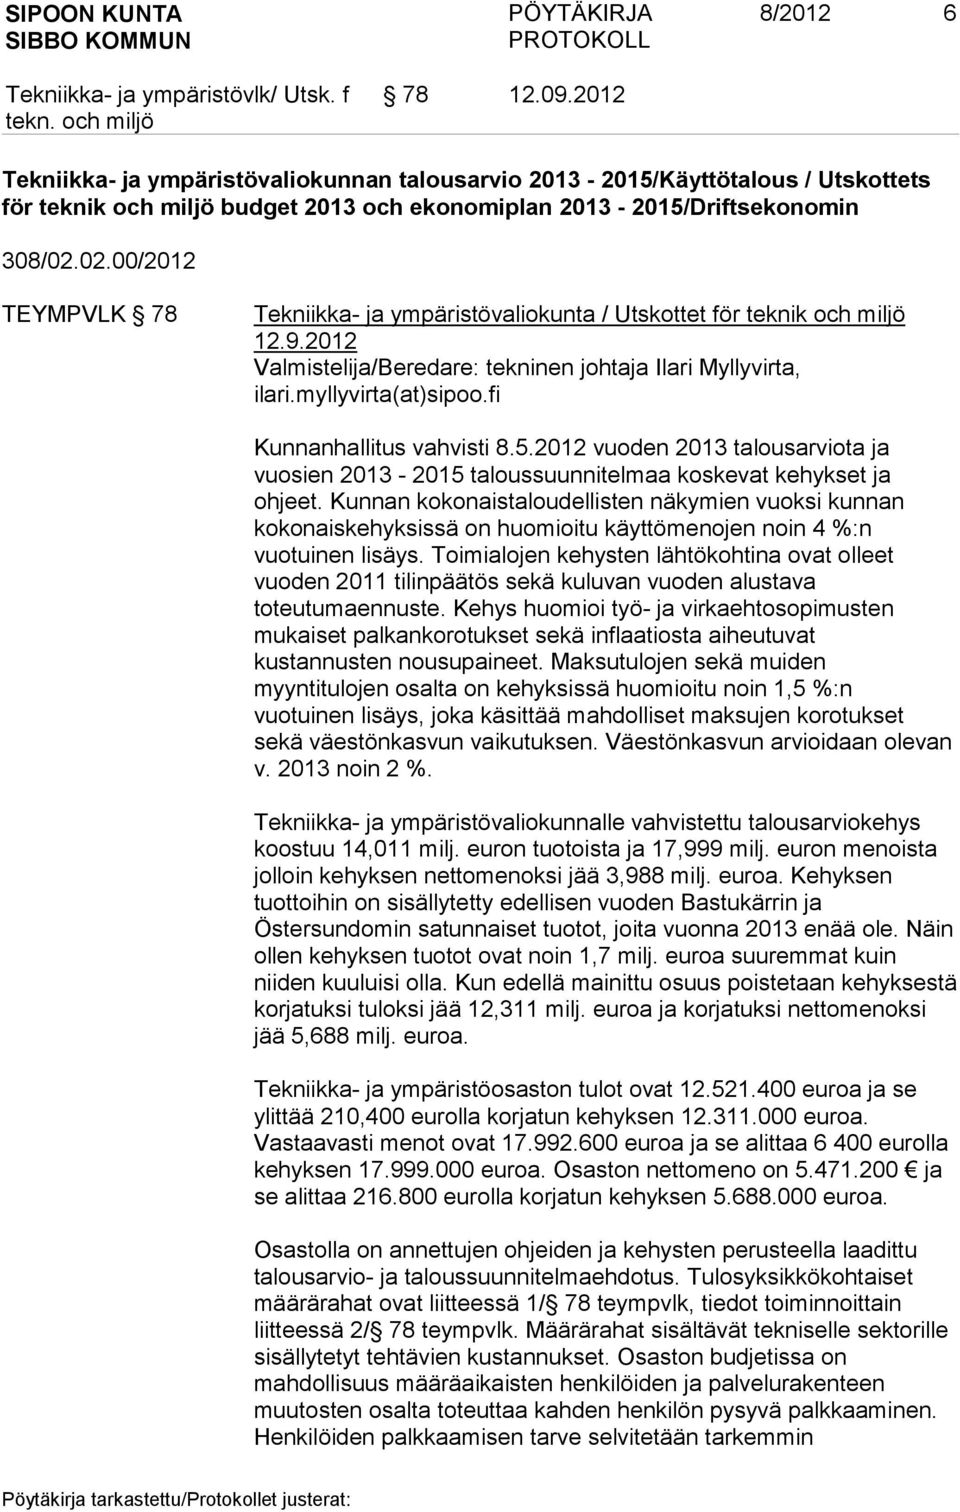 fi Kunnanhallitus vahvisti 8.5.2012 vuoden 2013 talousarviota ja vuosien 2013-2015 taloussuunnitelmaa koskevat kehykset ja ohjeet.